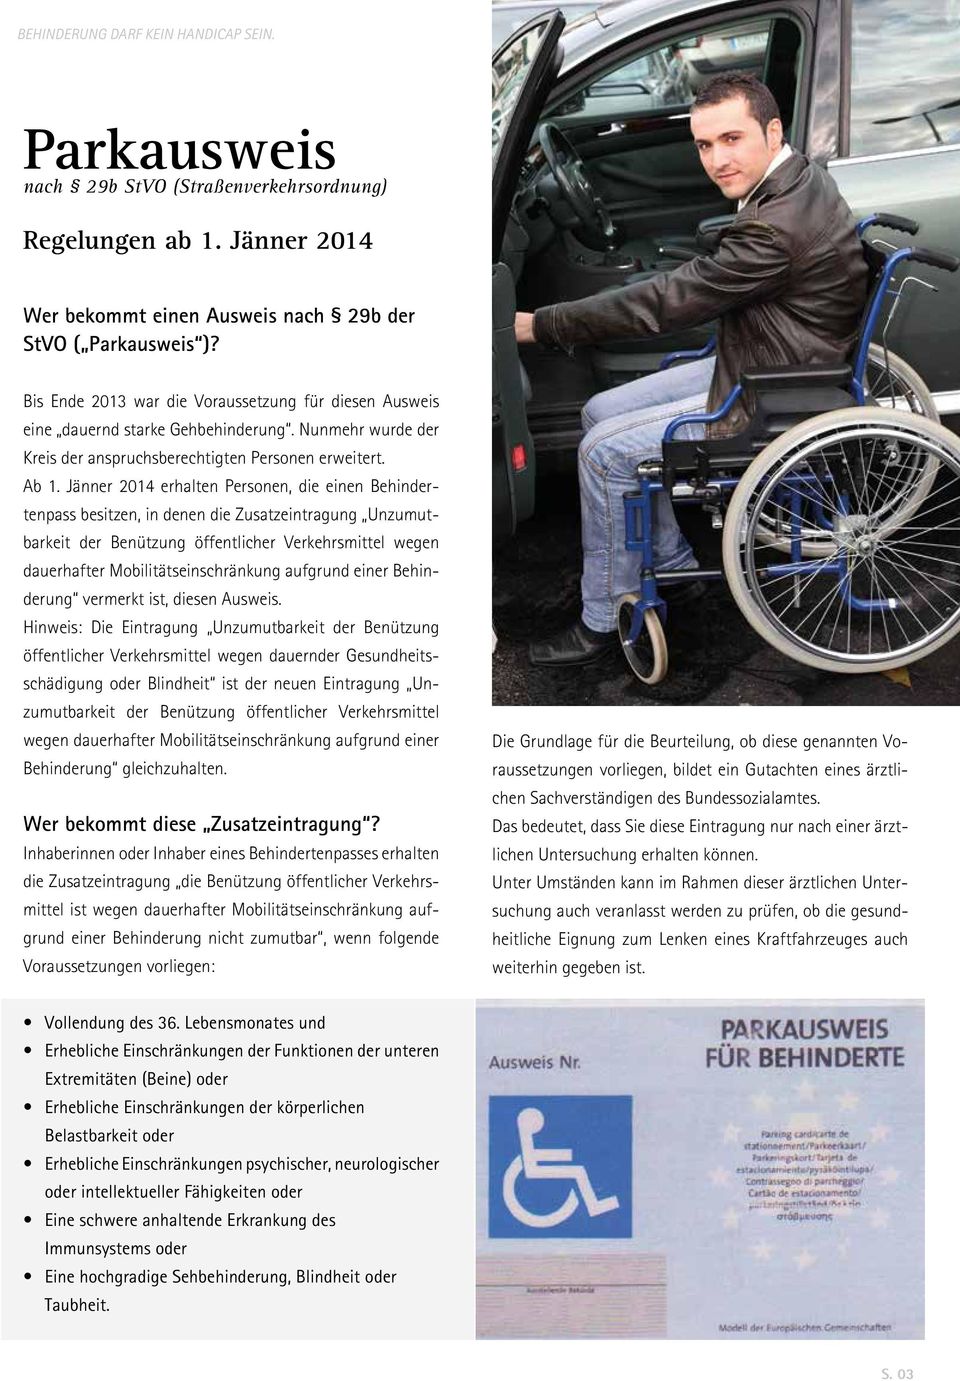 Jänner 2014 erhalten Personen, die einen Behindertenpass besitzen, in denen die Zusatzeintragung Unzumutbarkeit der Benützung öffentlicher Verkehrsmittel wegen dauerhafter Mobilitätseinschränkung